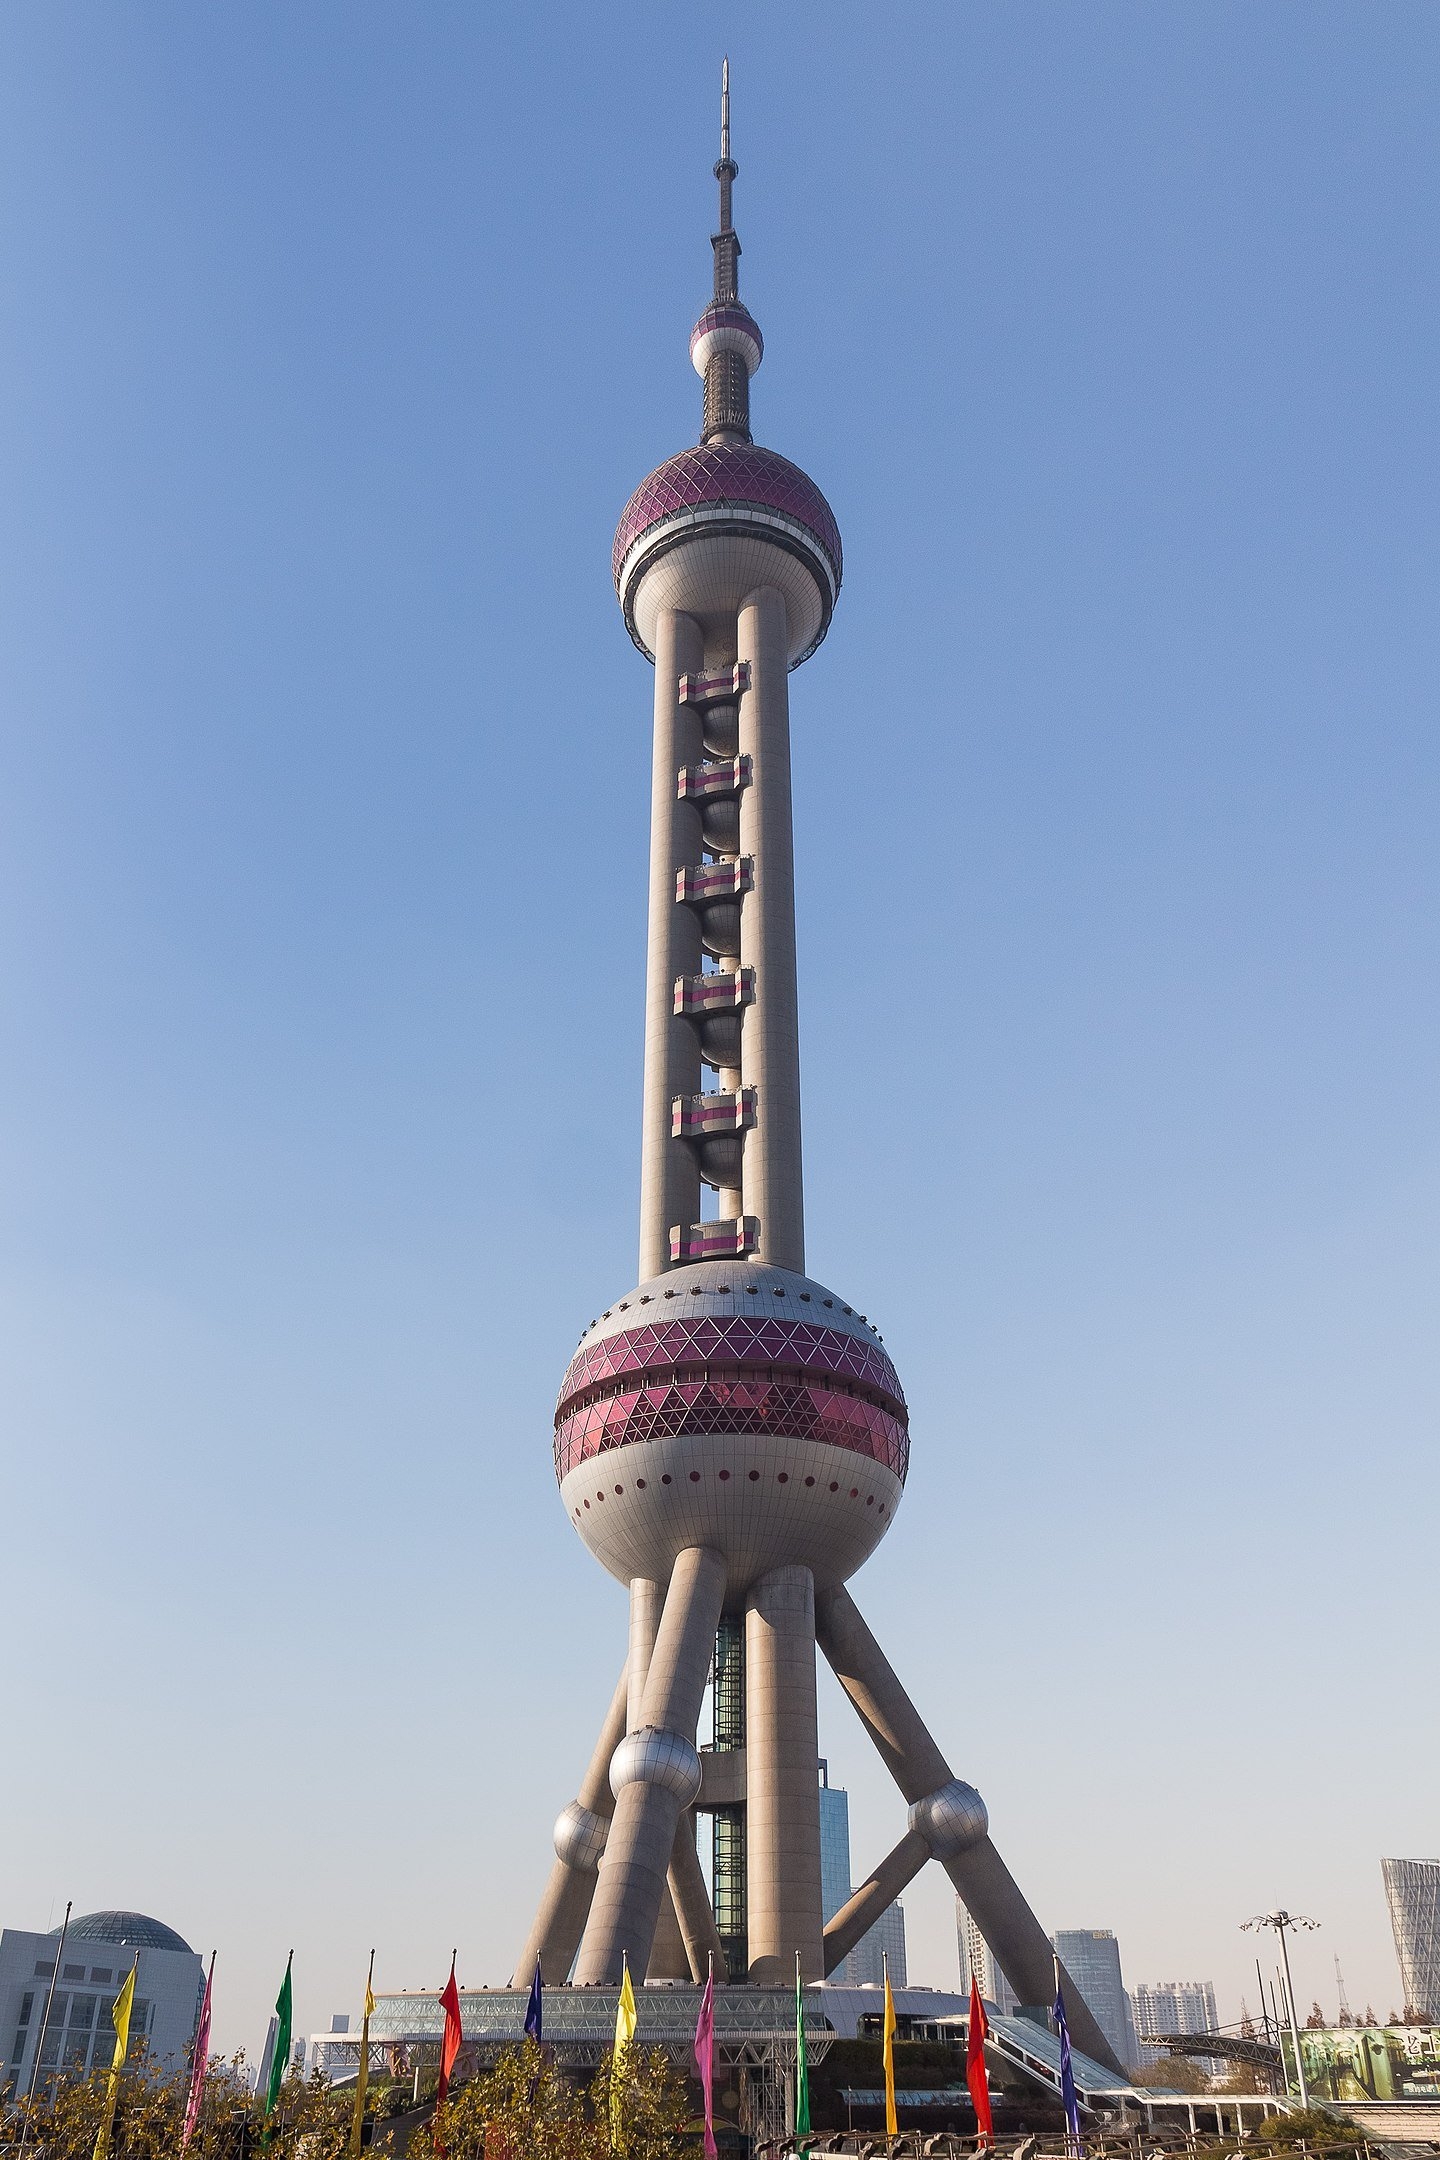 Oriental Pearl Tower - 468 metros - China - Foi inaugurada em Shangai em 1995. Sua arquitetura futurista conta com cinco esferas - duas delas gigantes. A torre tem três andares de observação e oferece um panorama de 360 graus. Além disso, possui um museu de ciência e tecnologia. Reprodução: Flipar